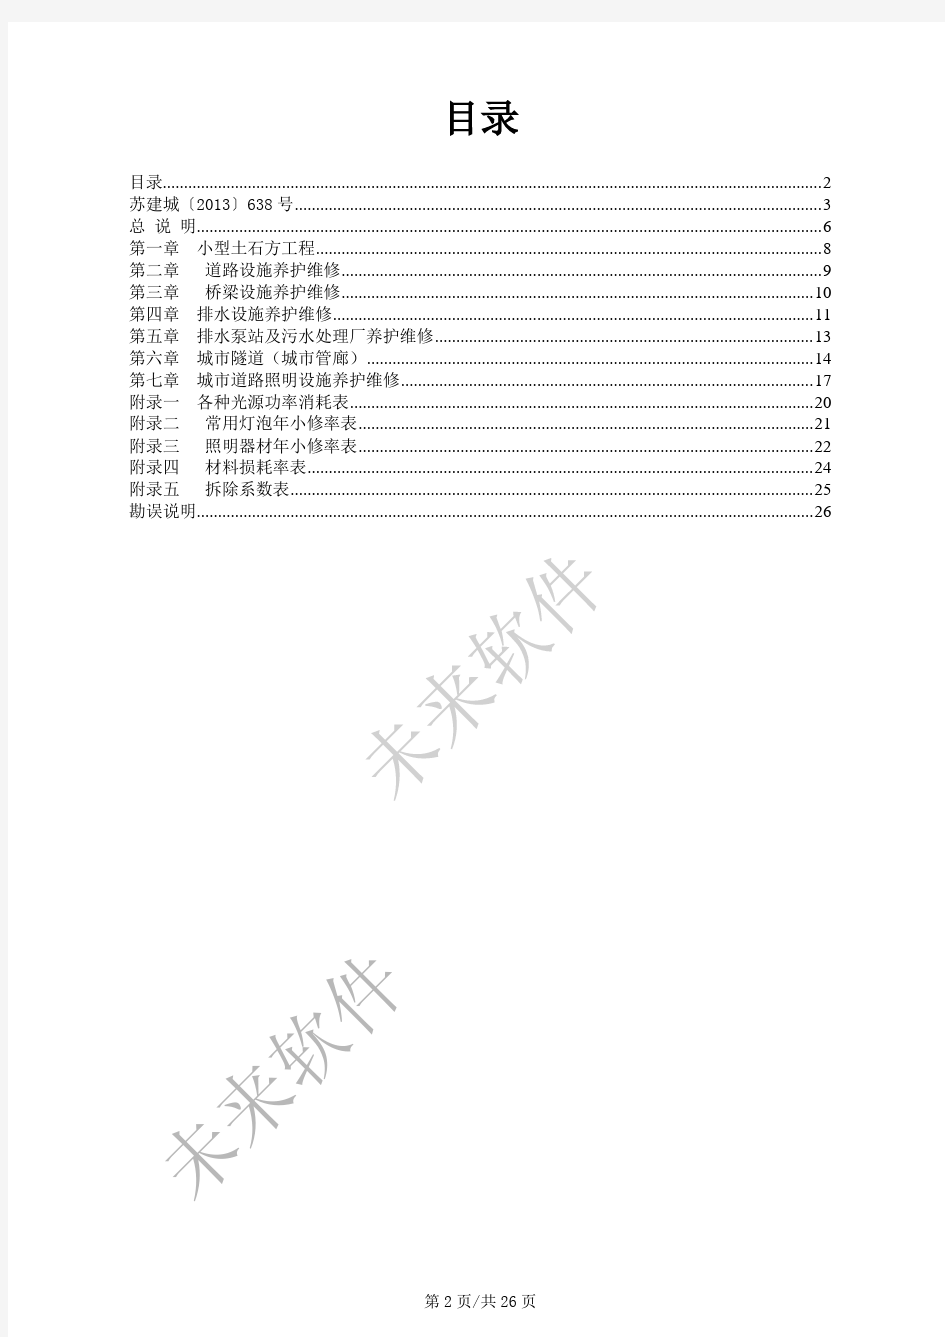 2013江苏市政设施养护维修工程定额书说明